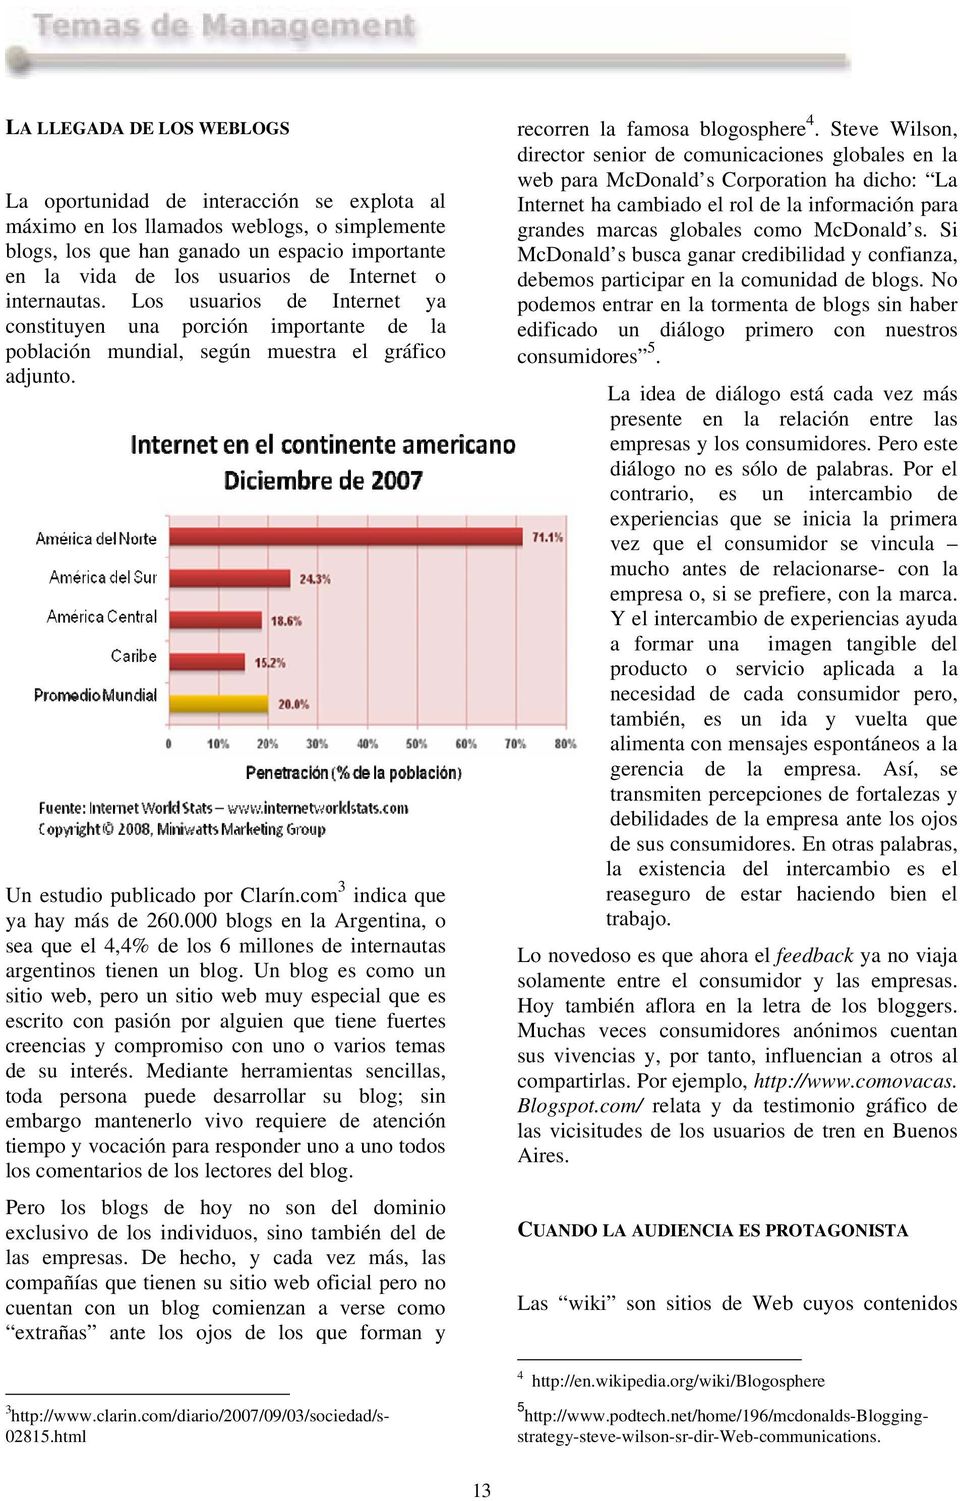 com 3 indica que ya hay más de 260.000 blogs en la Argentina, o sea que el 4,4% de los 6 millones de internautas argentinos tienen un blog.